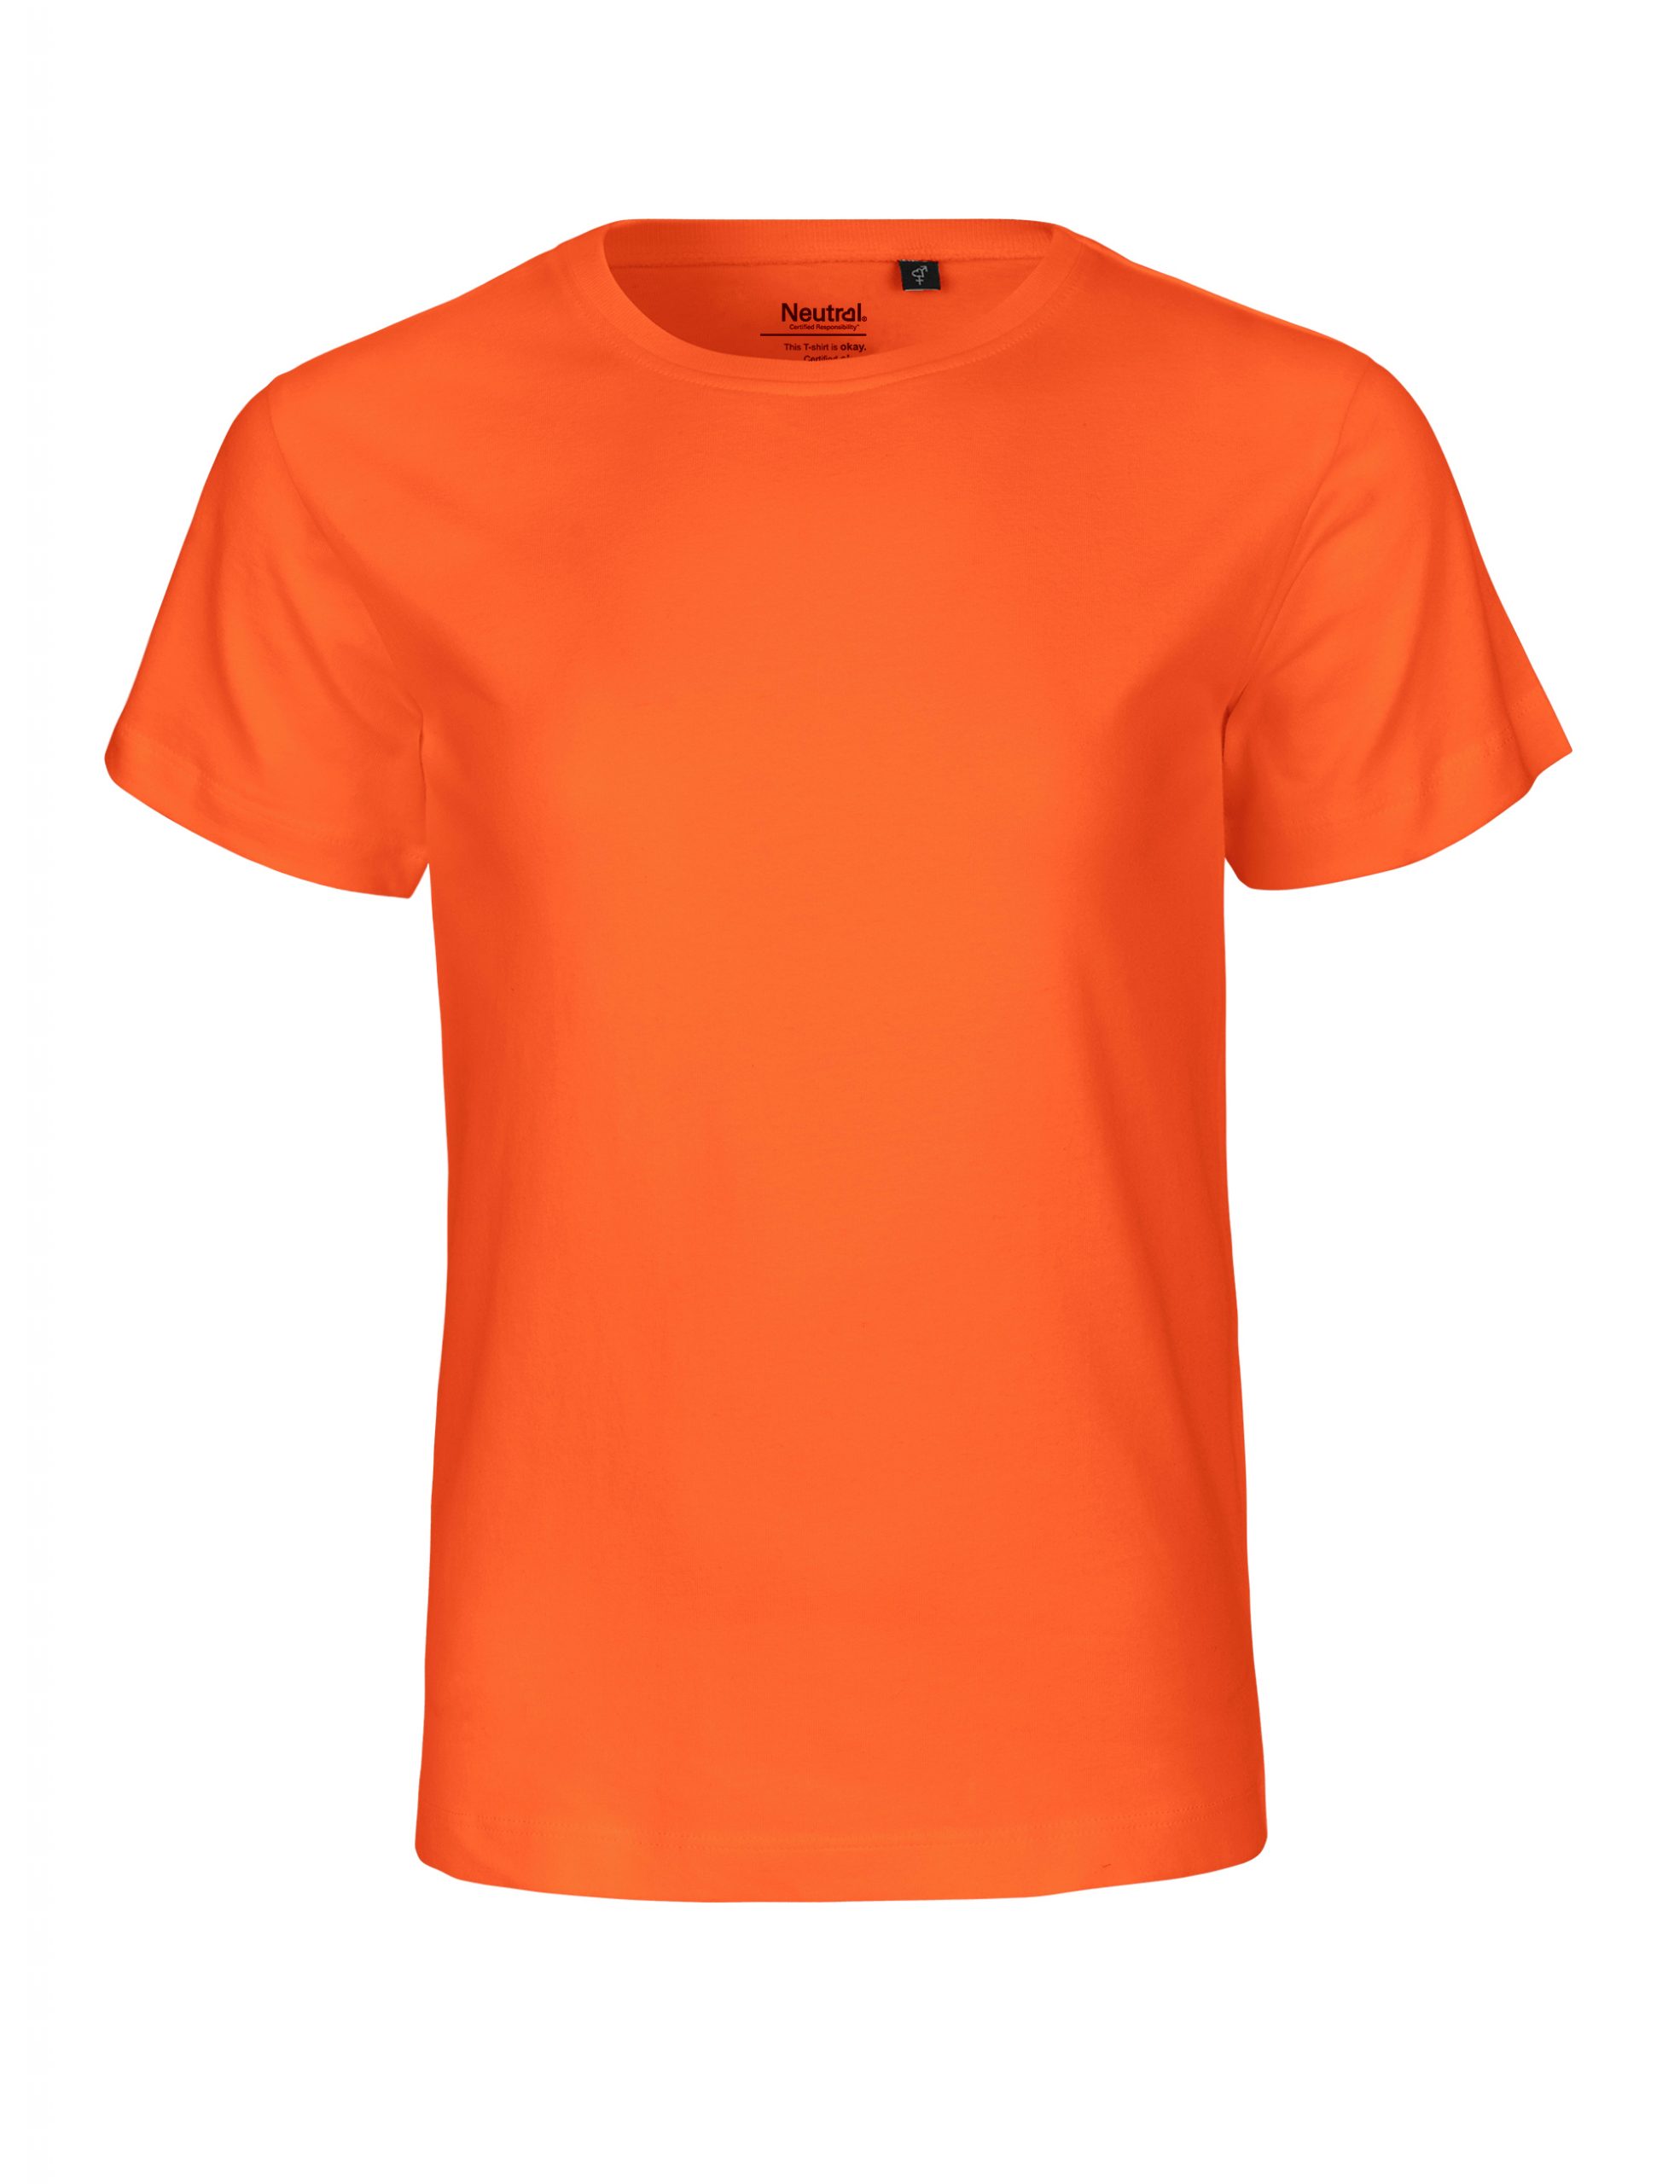 Neutral Kids T-shirt Orange